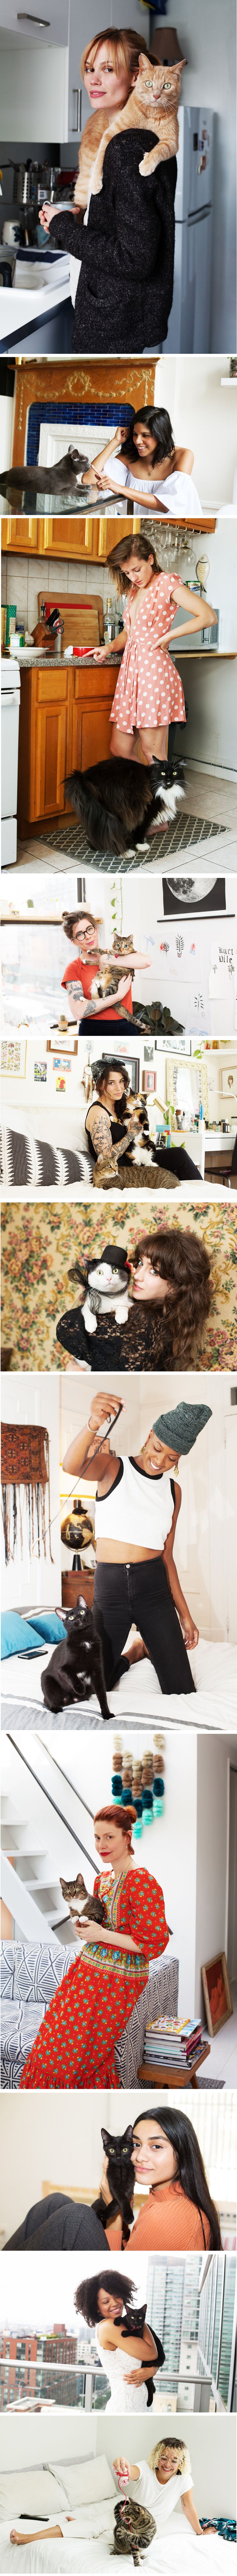 Savršena galerija: Spojila je dvije predivne stvari - mačke i lijepe žene